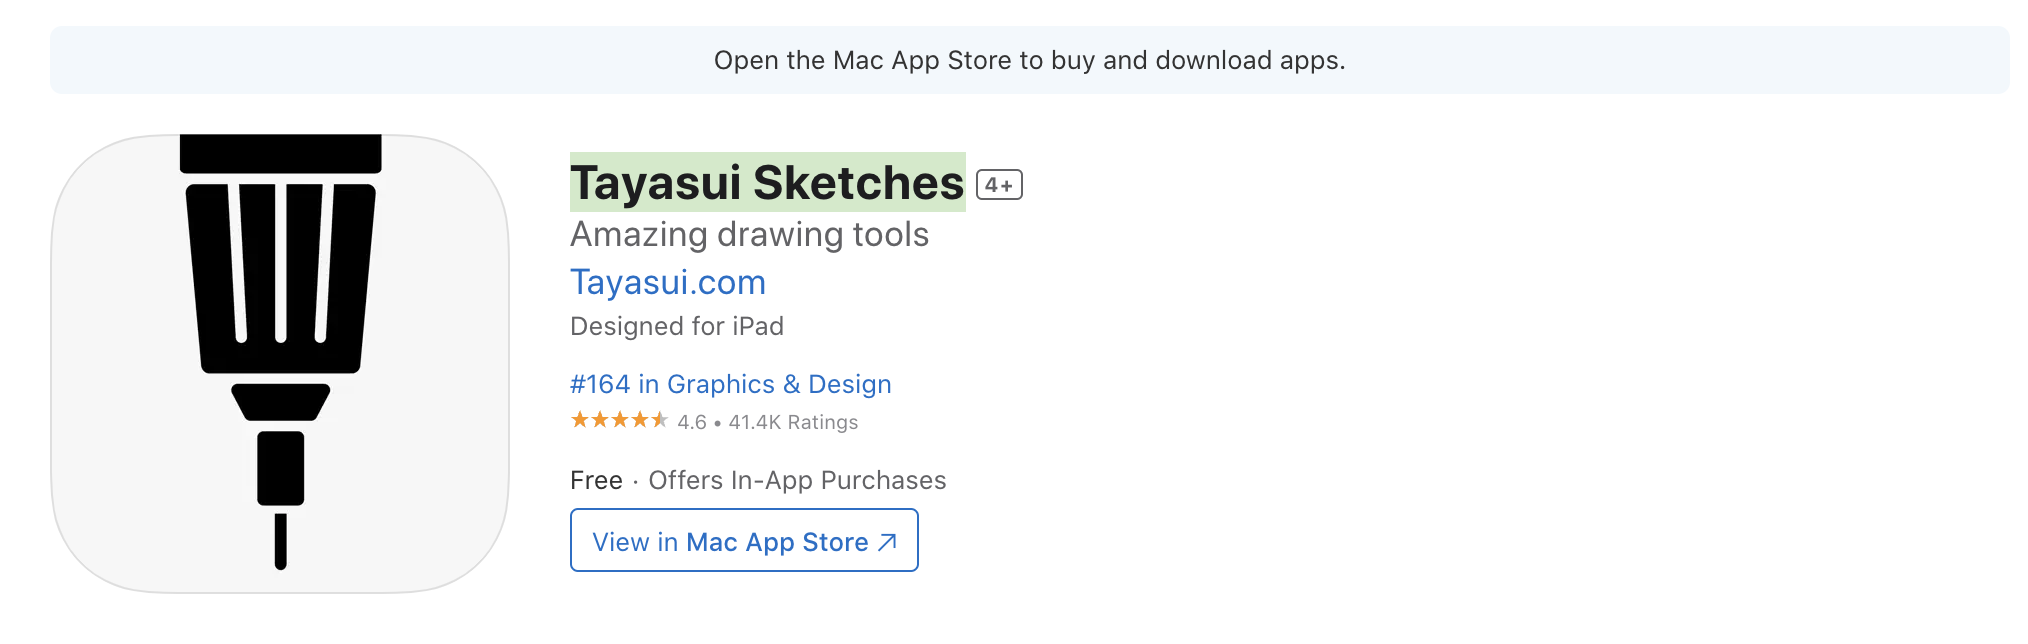 แอปวาดรูป iPad Tayasui Sketches